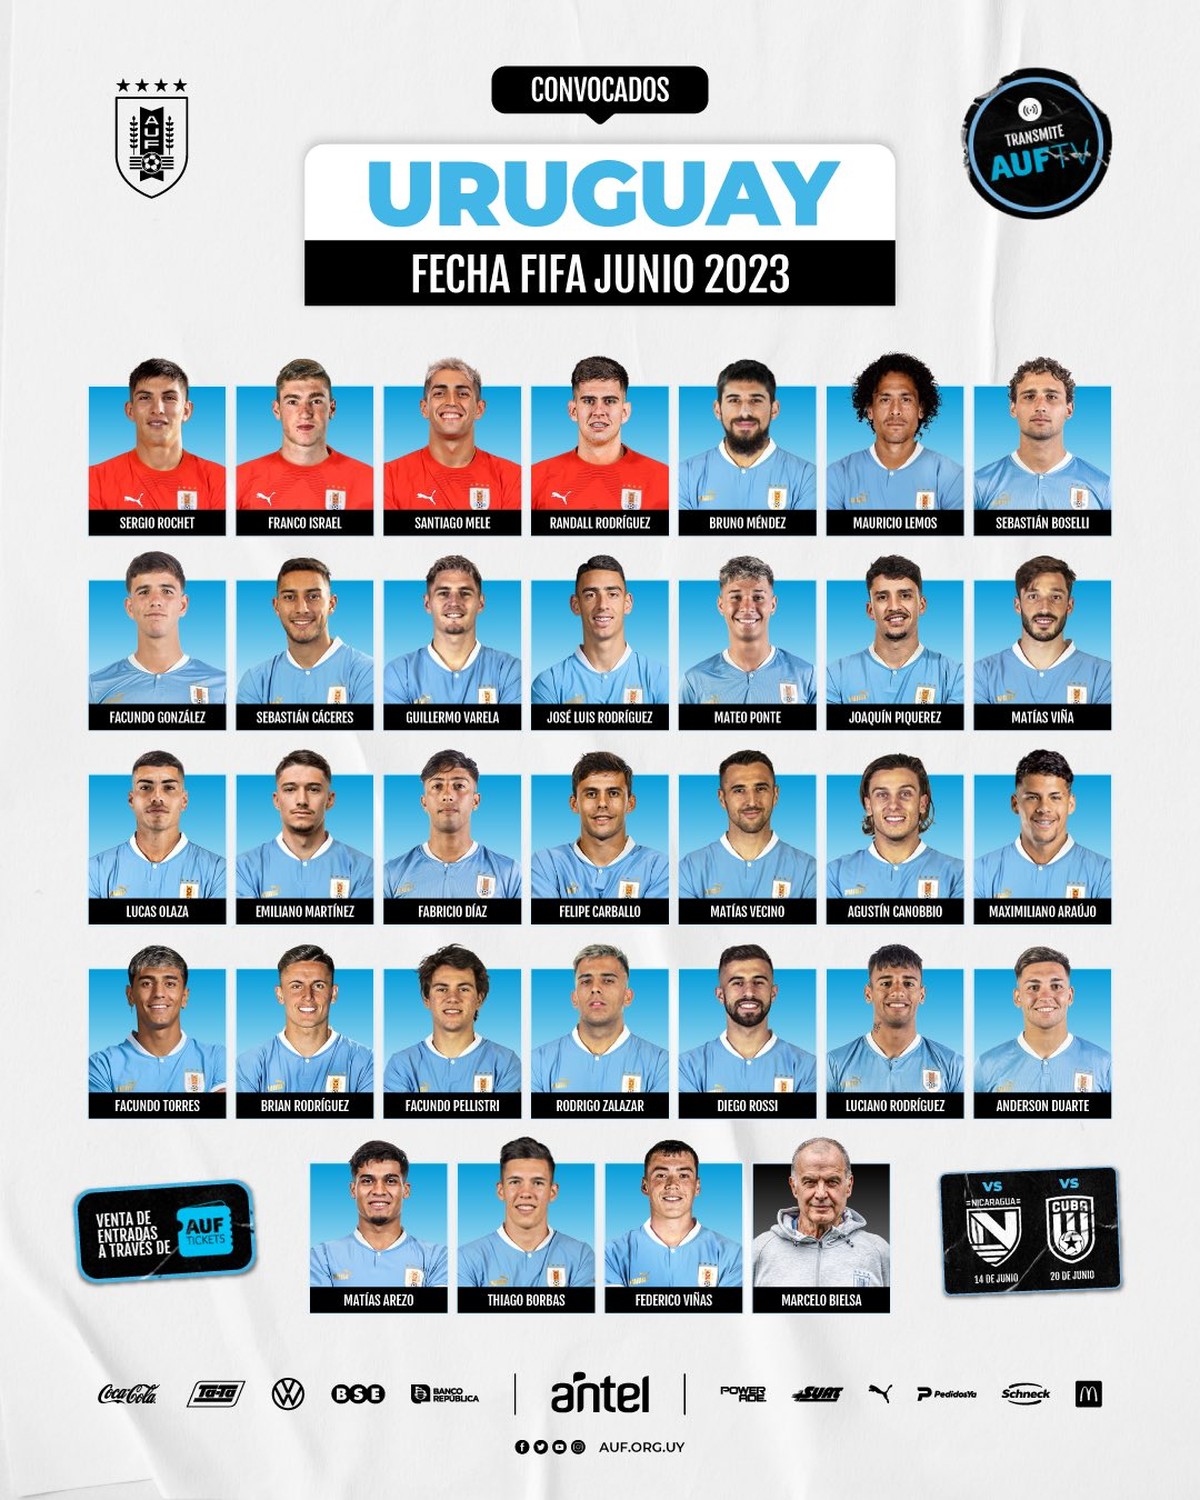 Titulares com o Uruguai, Piquerez e Bruno Méndez se destacam em vitória  sobre Cuba